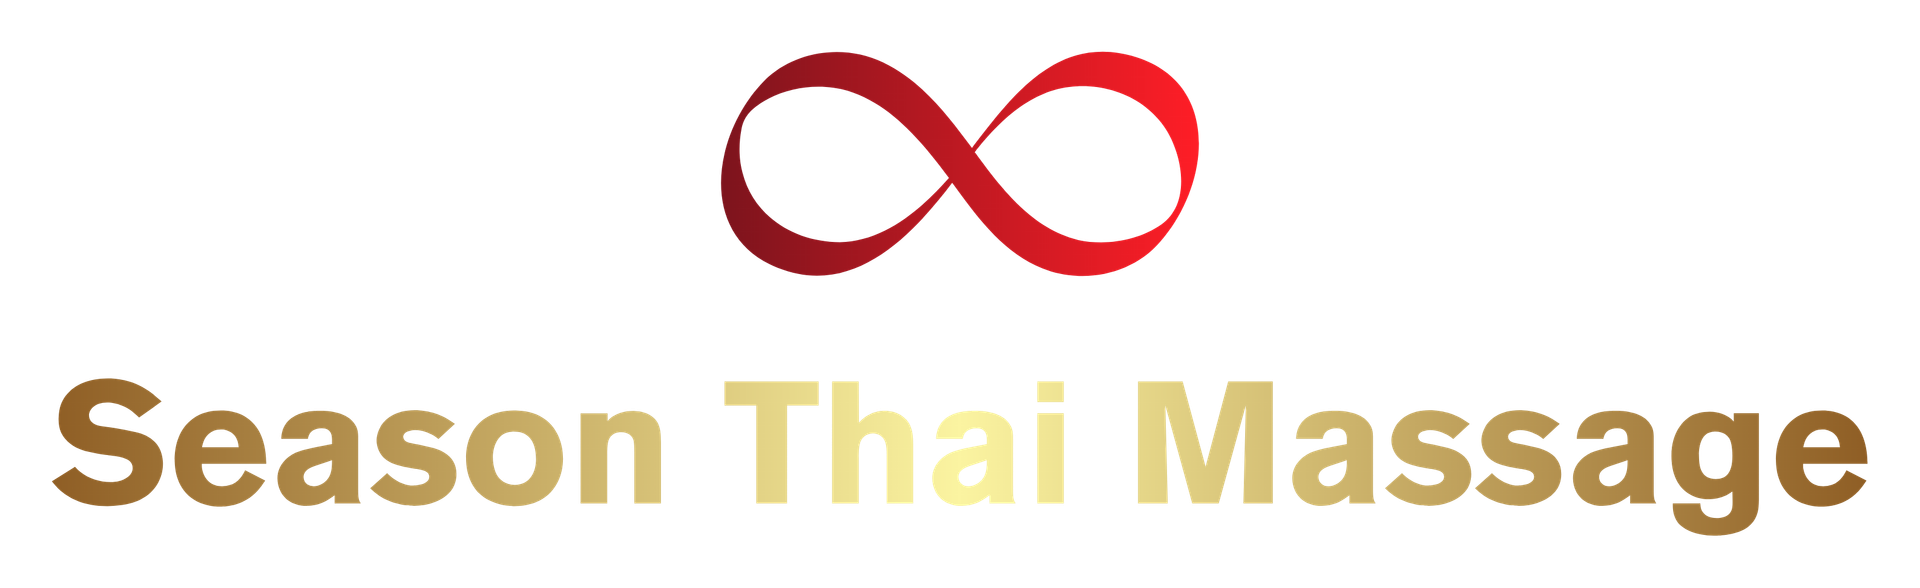 Season Thai Massage